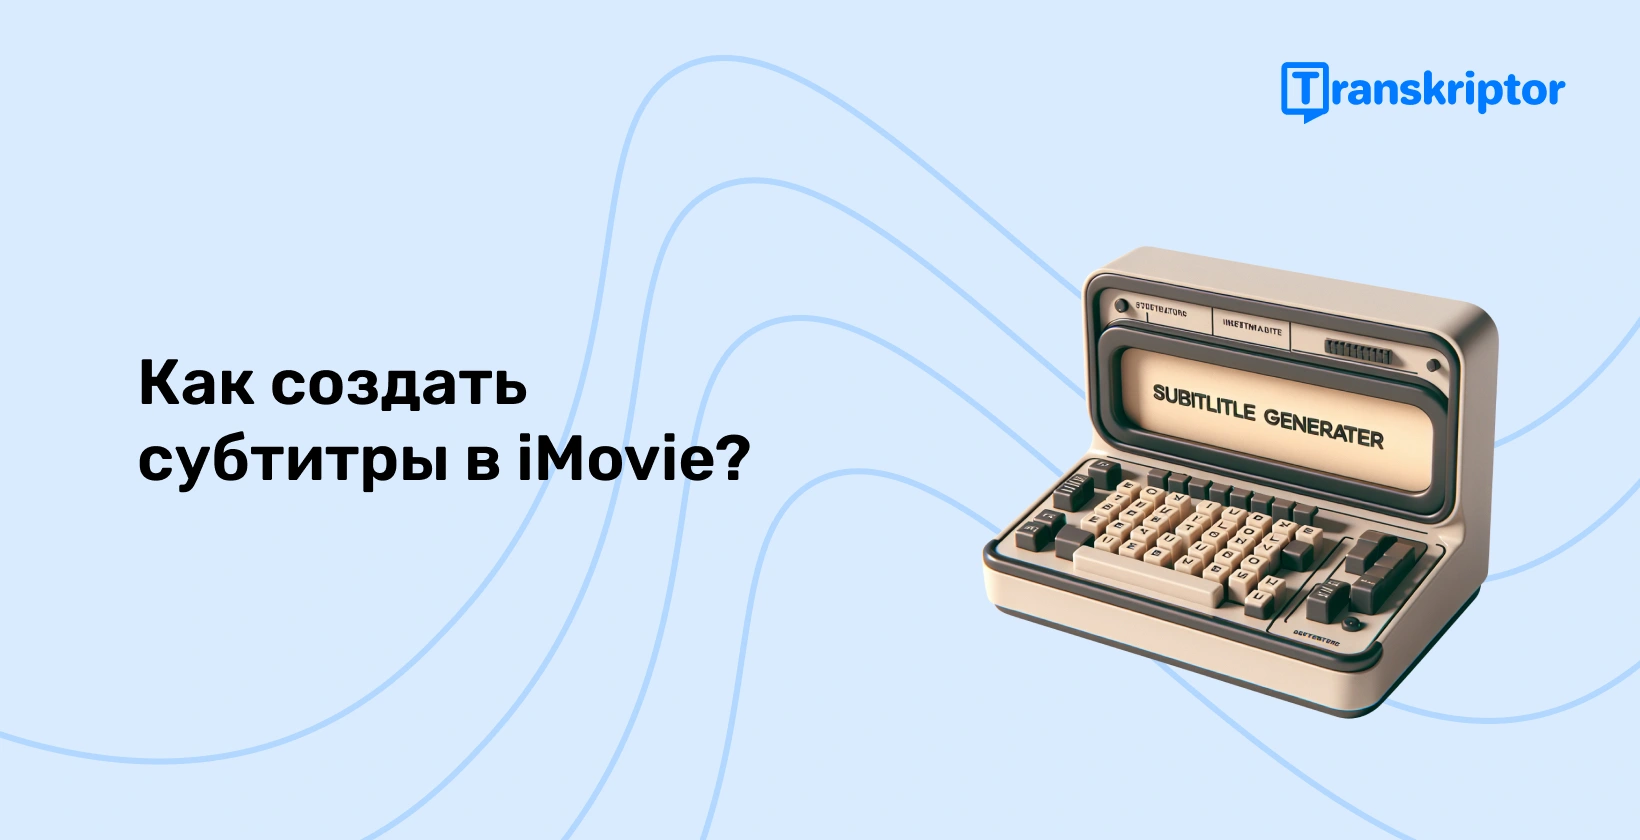 Винтажная пишущая машинка с генератором субтитров, символизирующая процесс создания субтитров в iMovie, повышающая доступность видео.